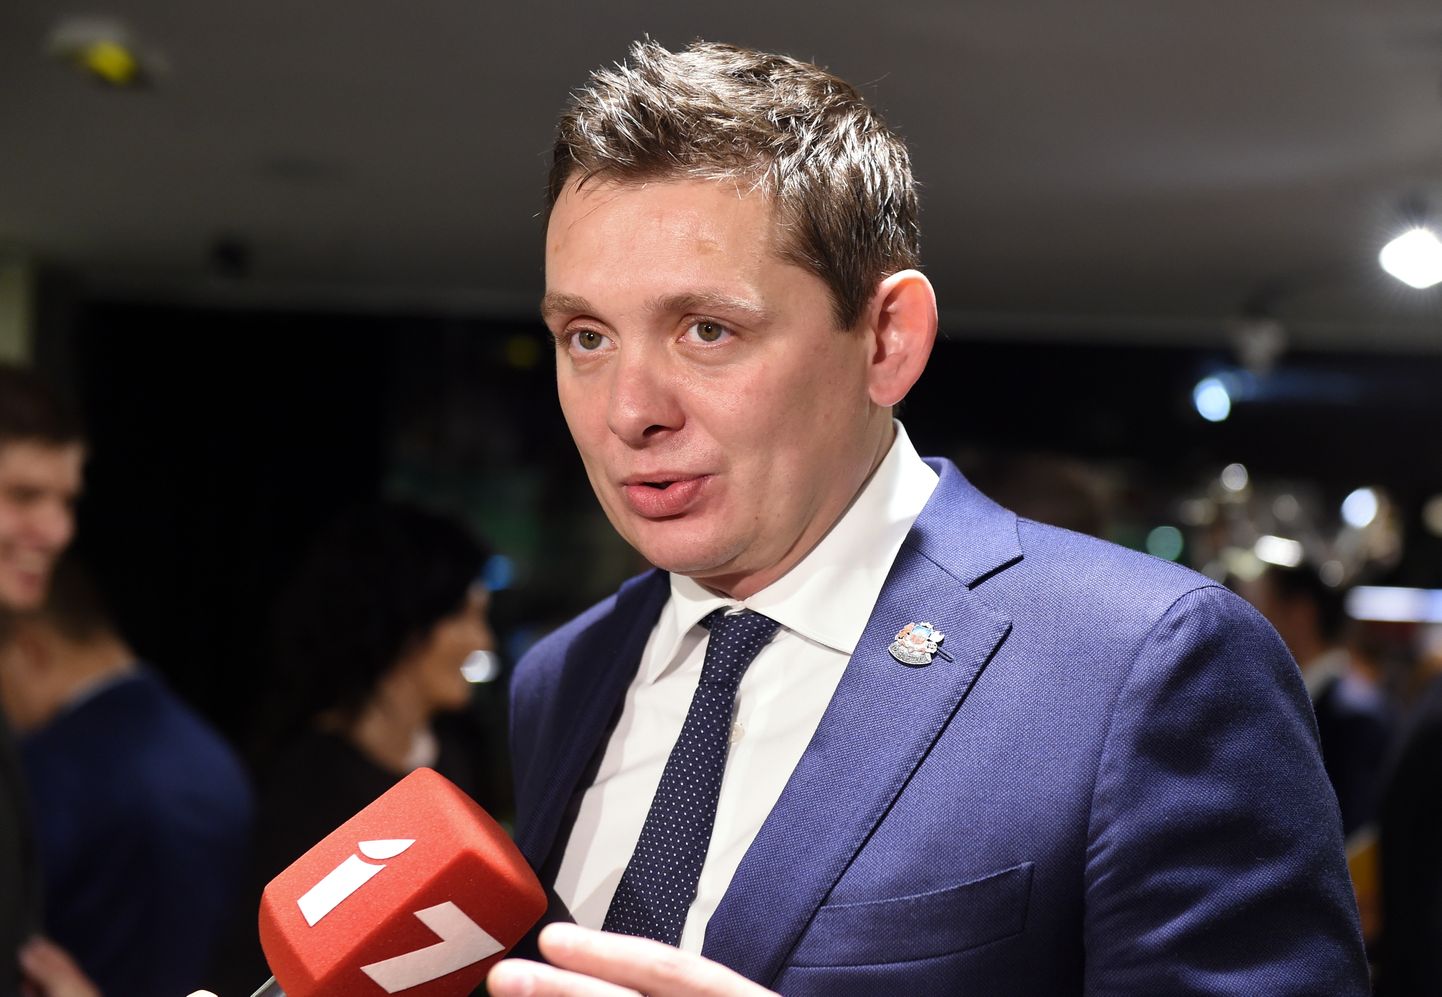 Partijas "KPV LV" valdes priekšsēdētājs Artuss Kaimiņš atbild uz žurnālistu jautājumiem, sagaidot 13. Saeimas vēlēšanu rezultātus.